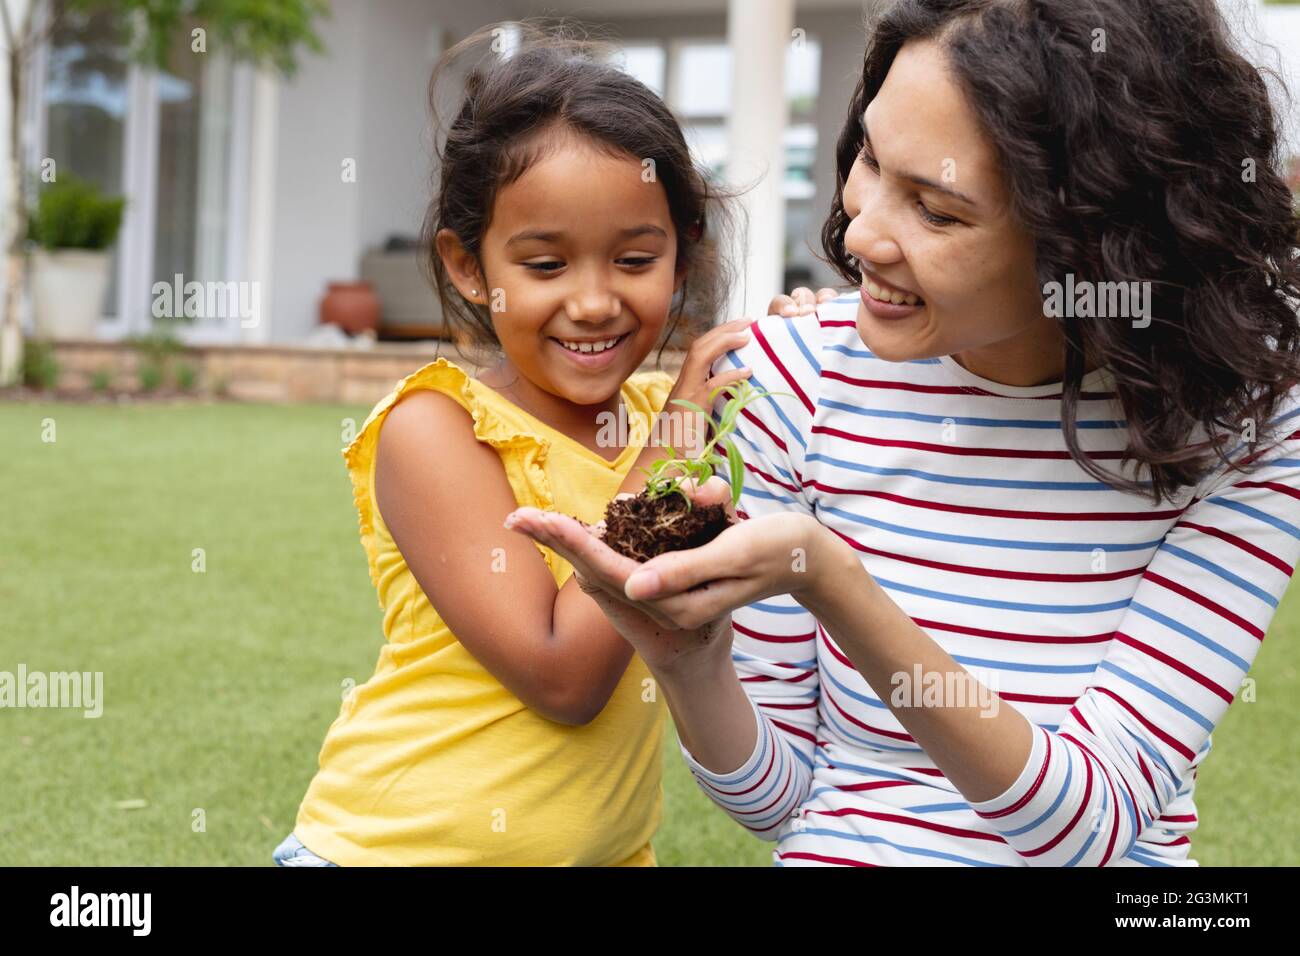 Sorridente giardinaggio di madre e figlia ispanica, madre che tiene il seedling in mano Foto Stock